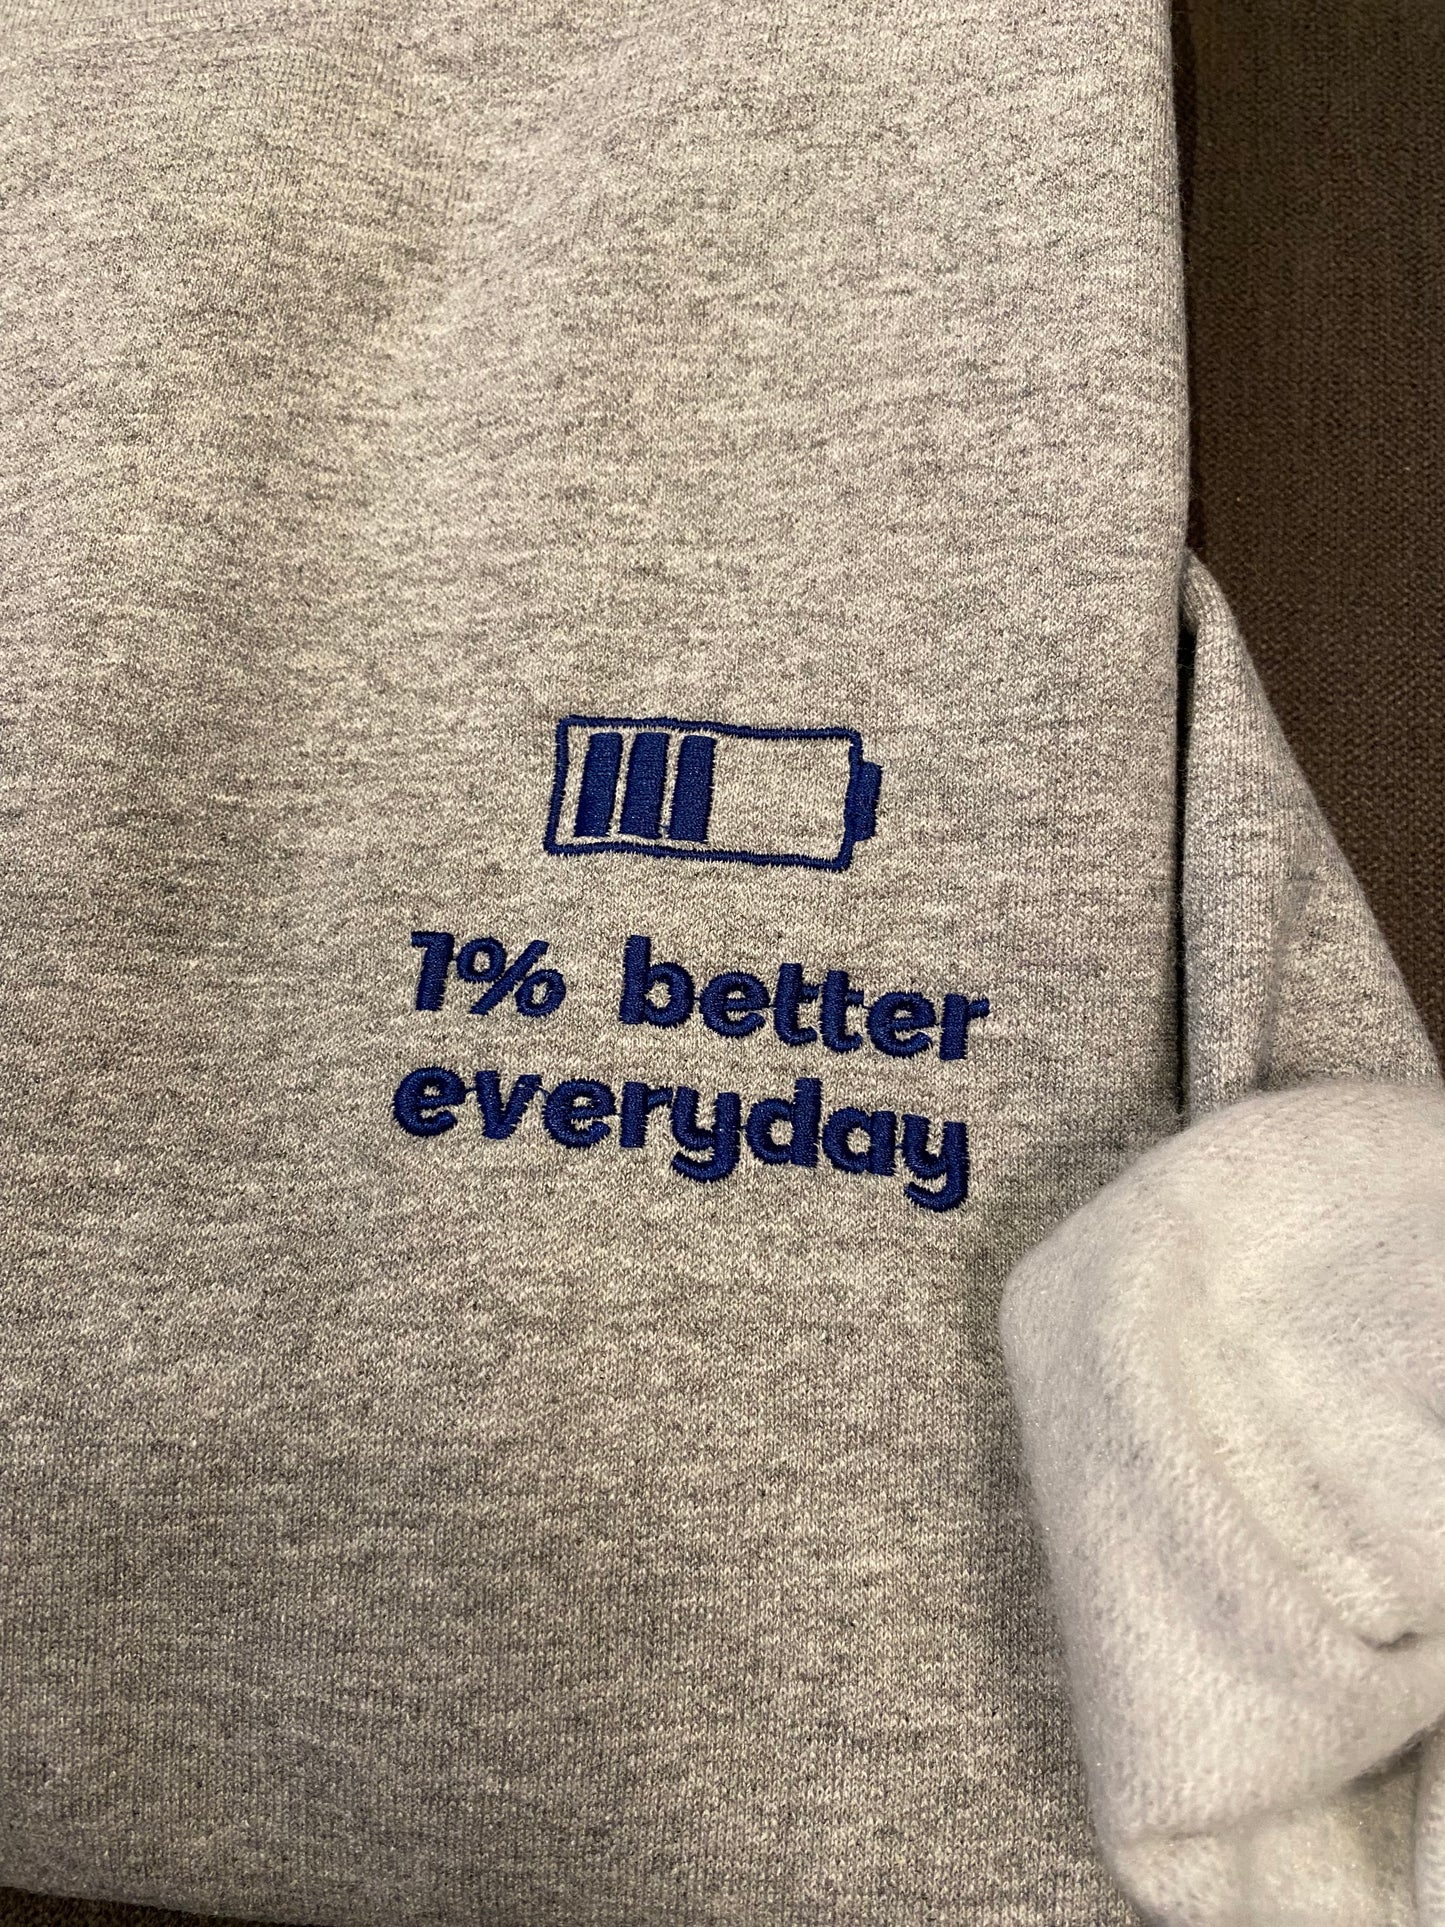 Sweatshirt "1% better"